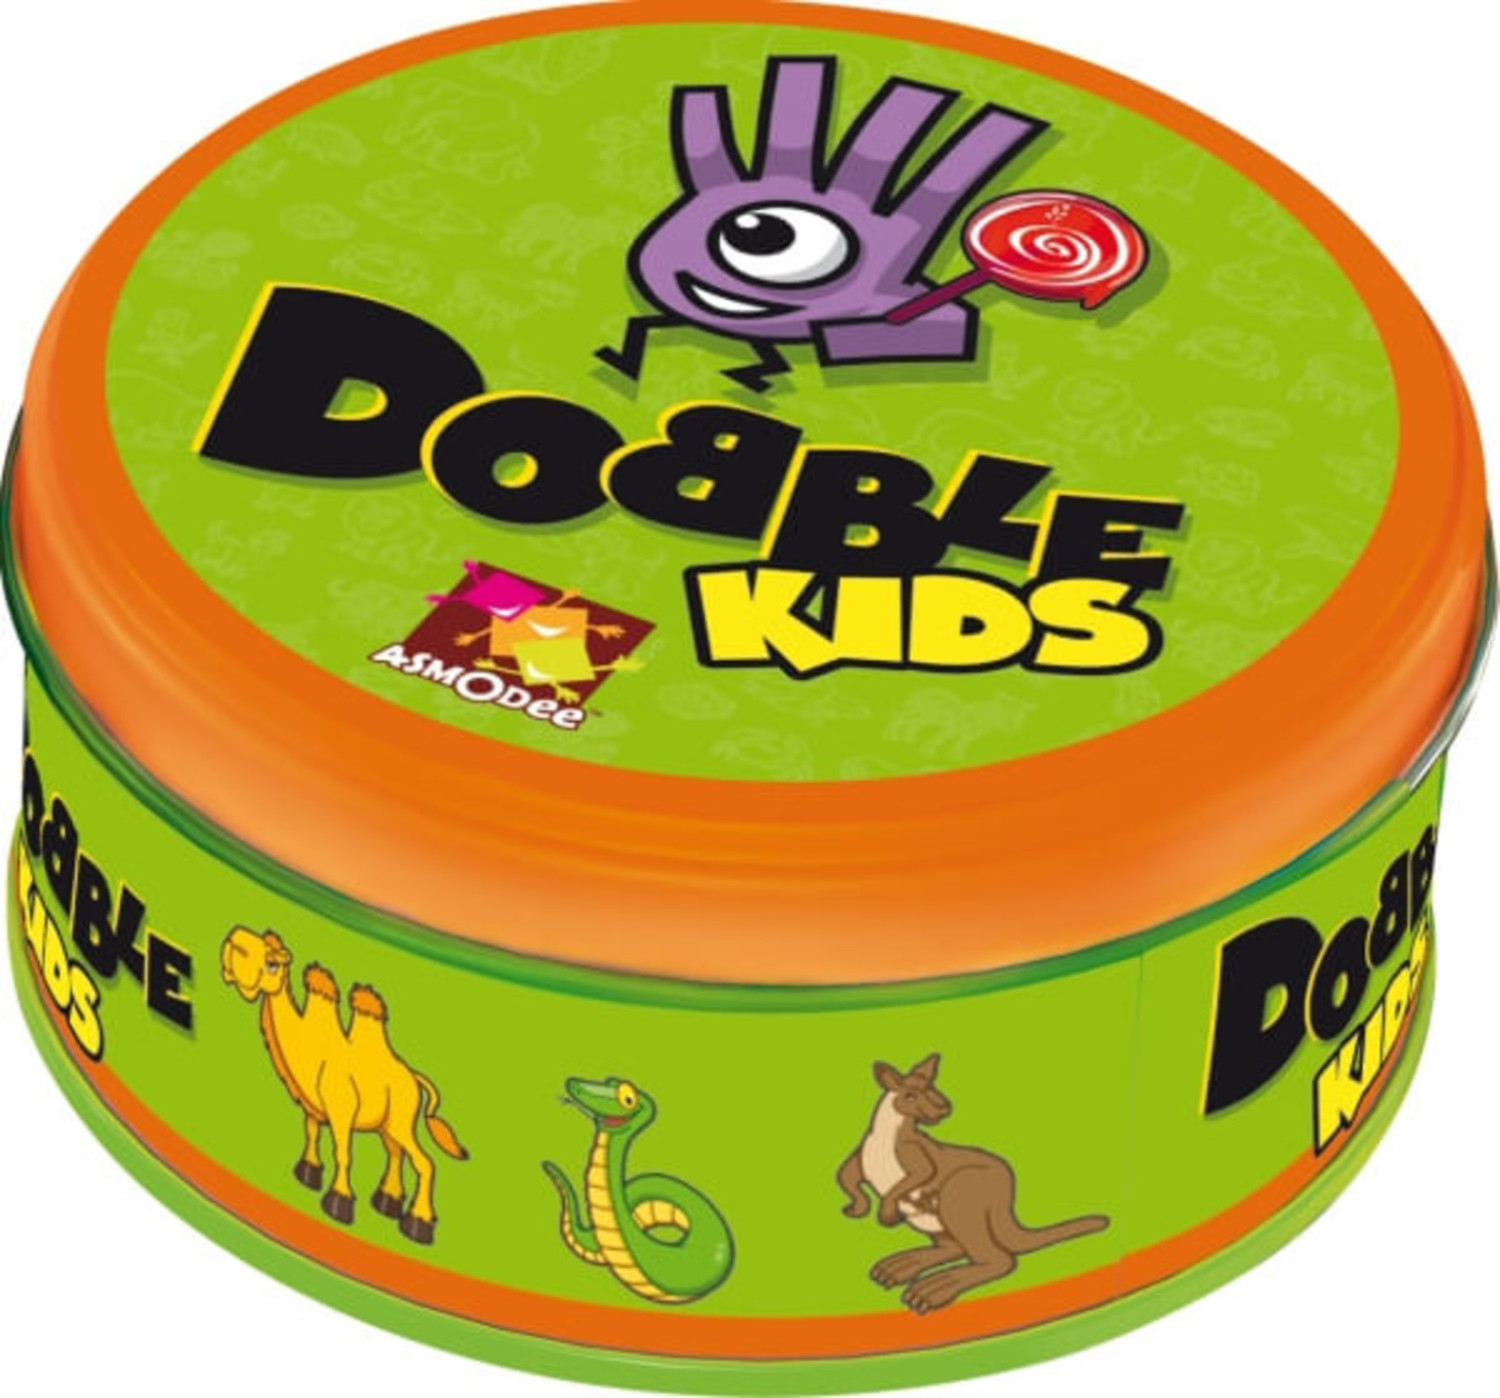 Jeu de cartes Dobble Kids ASMODEE : Comparateur, Avis, Prix